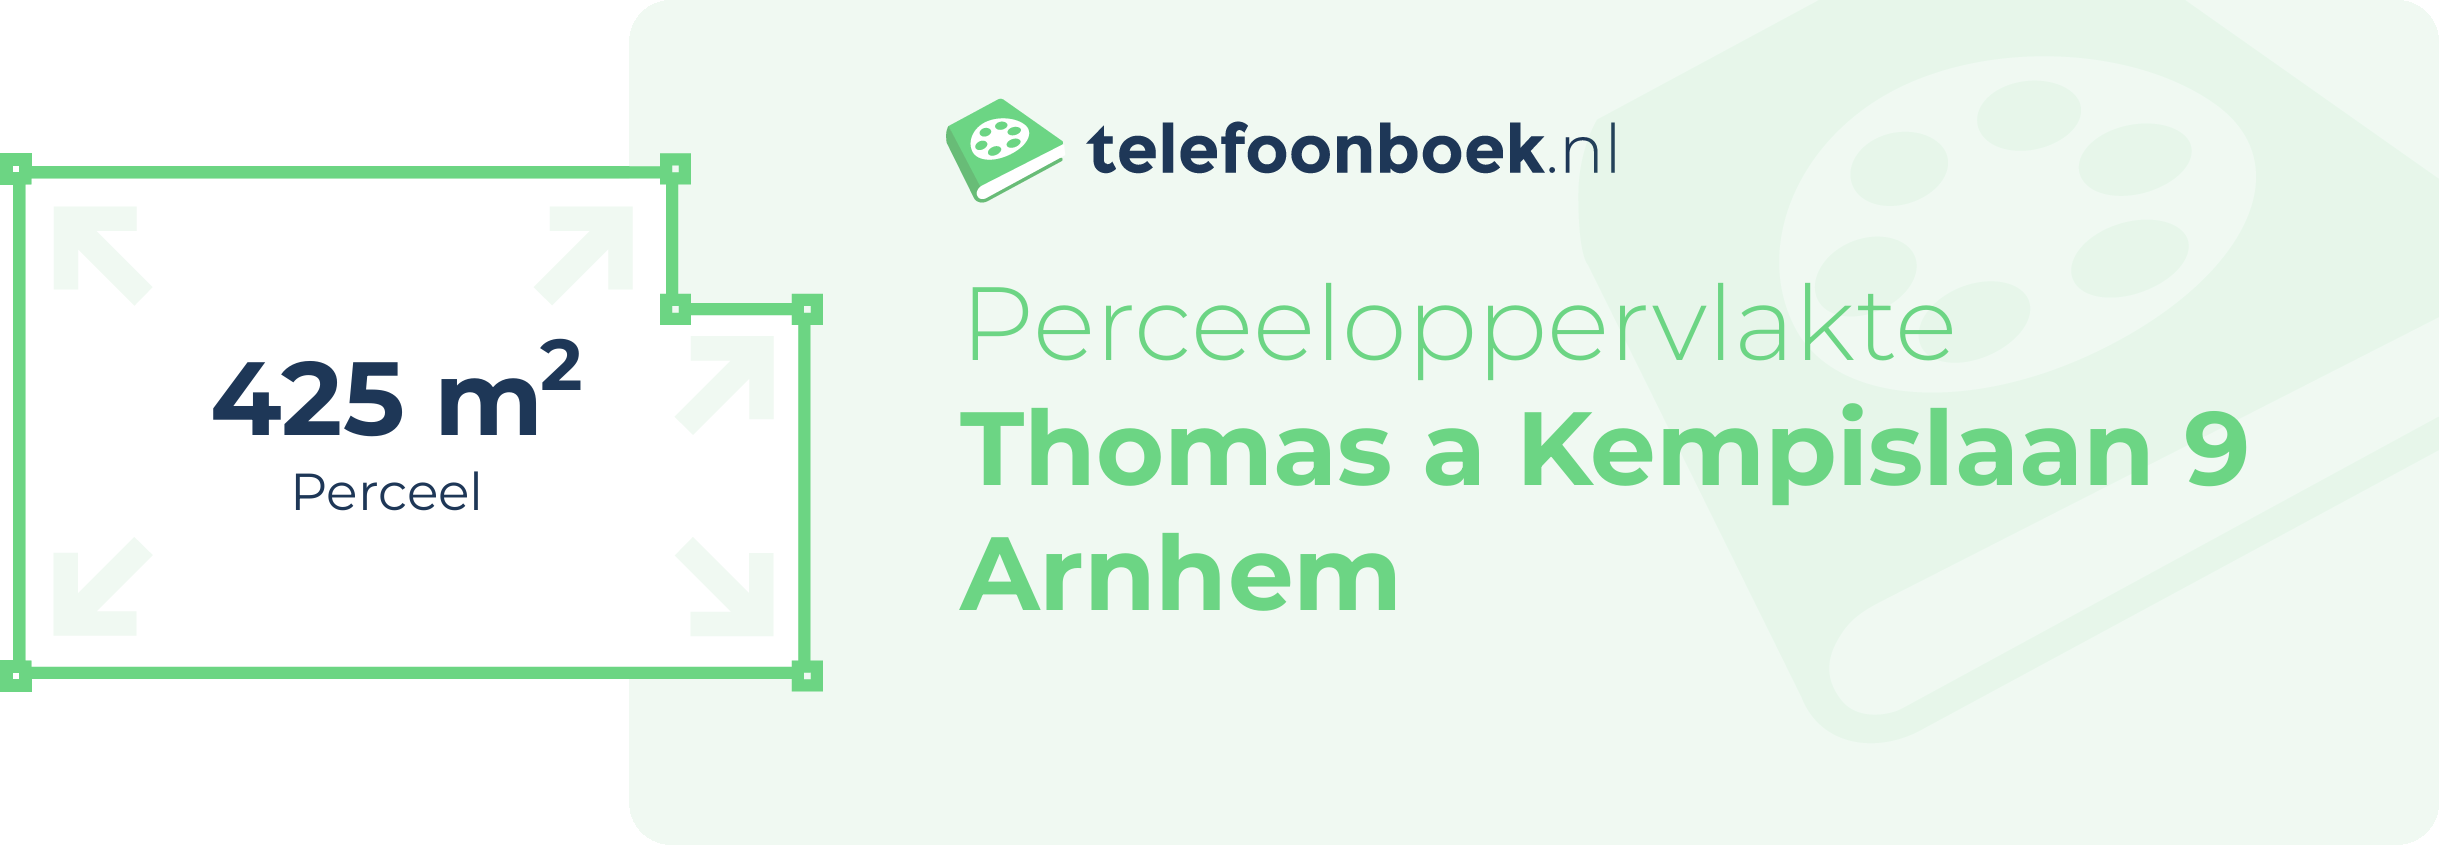 Perceeloppervlakte Thomas A Kempislaan 9 Arnhem